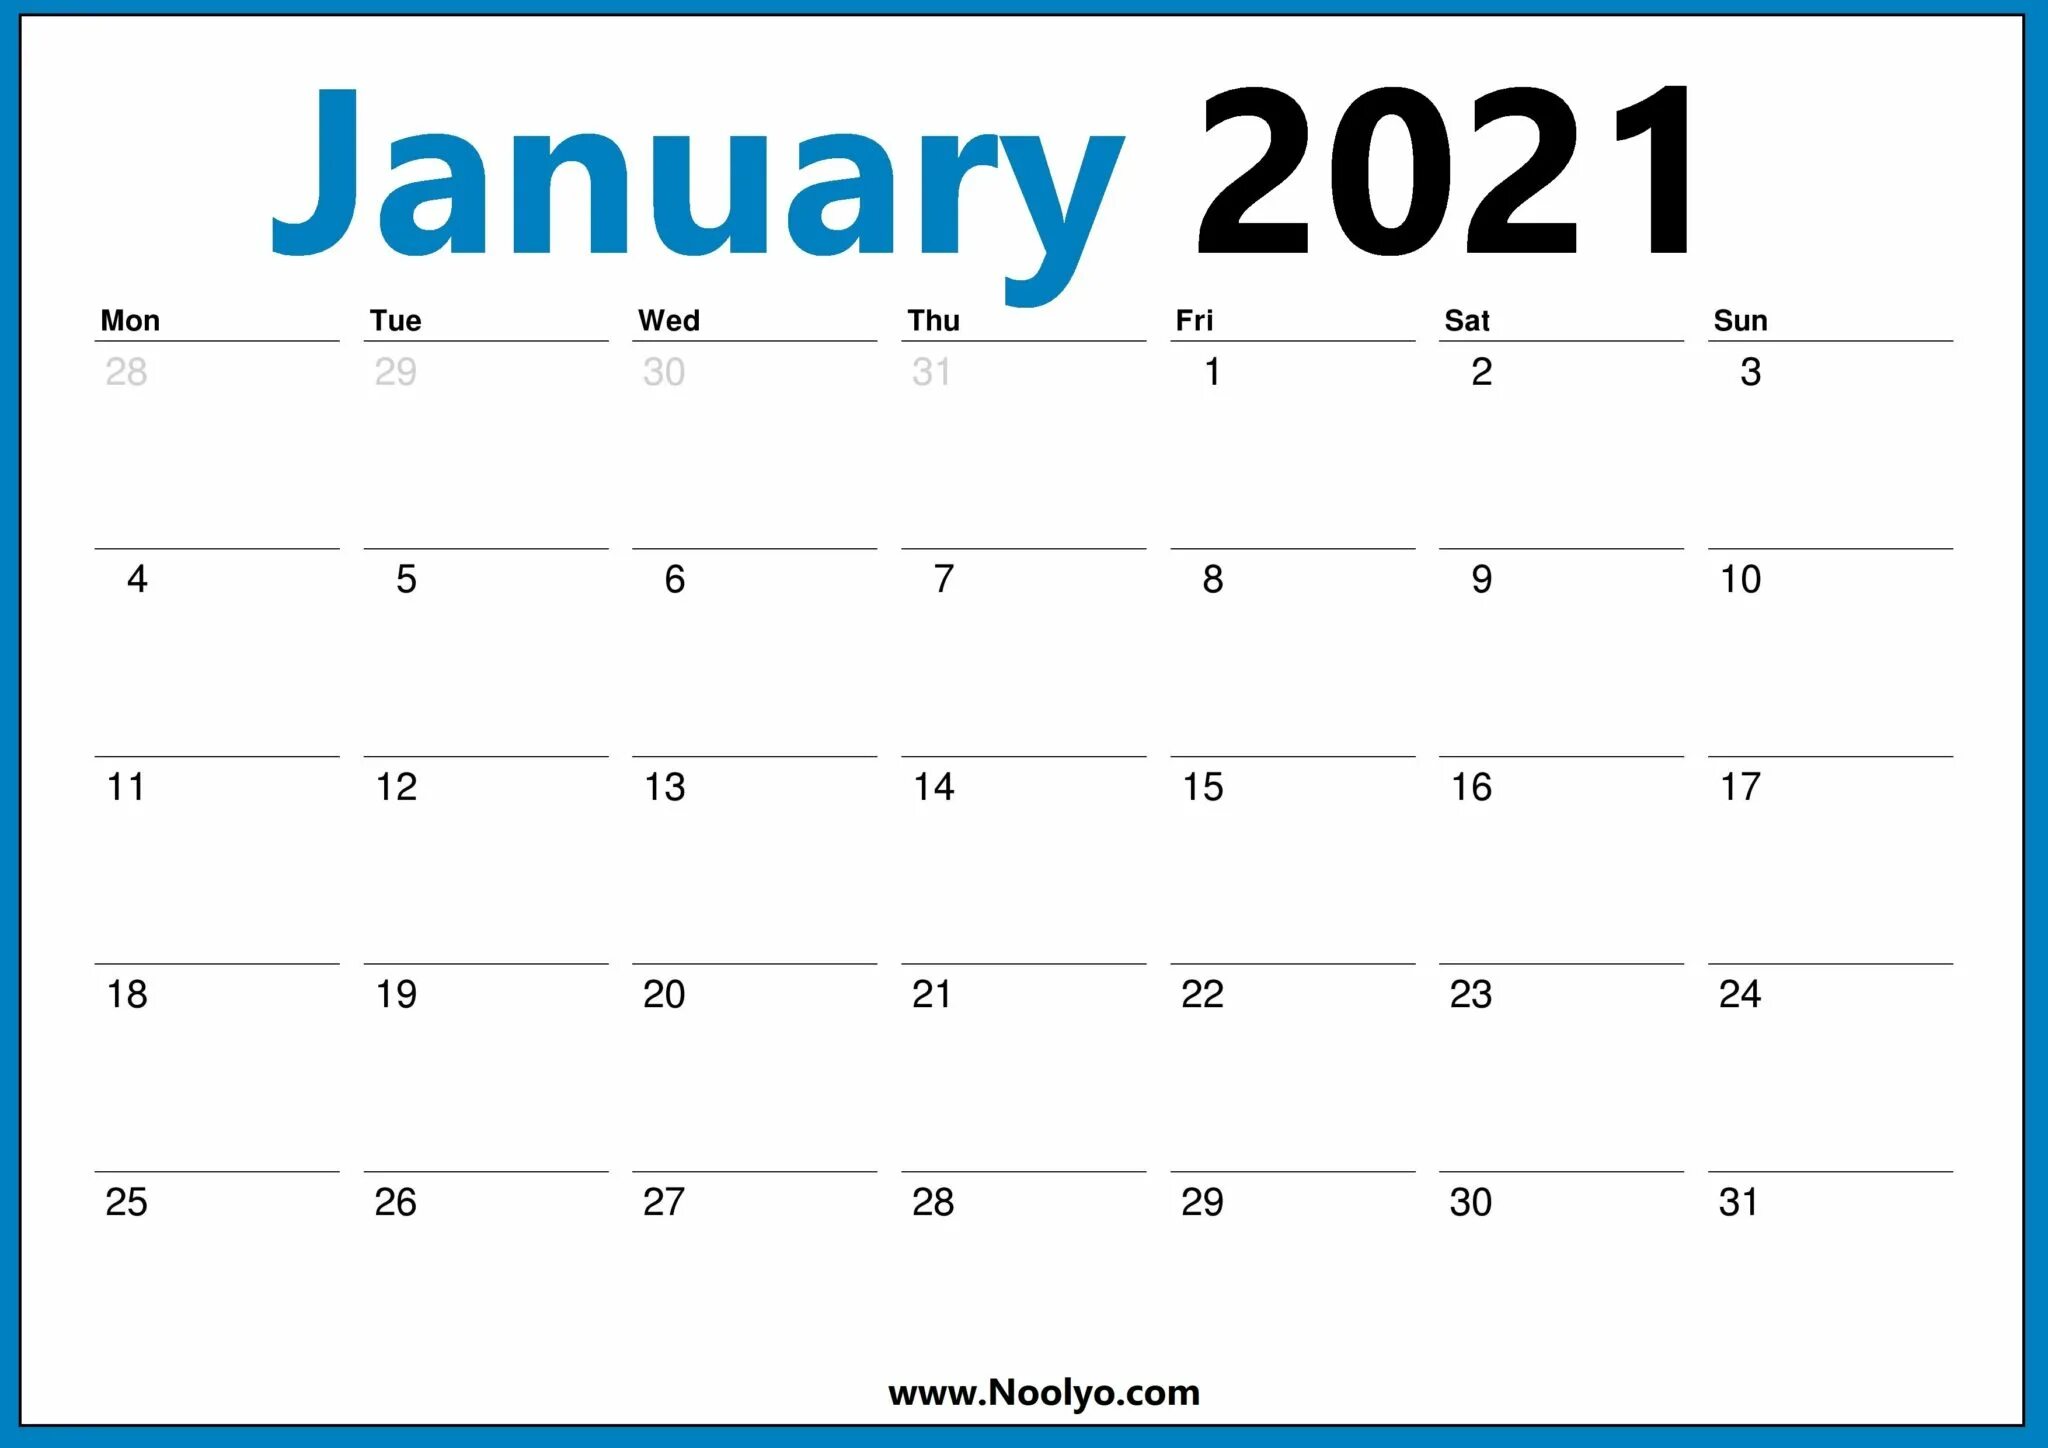 Календарь март. Март 2021. Январь 2021. Календарь январь 2021.